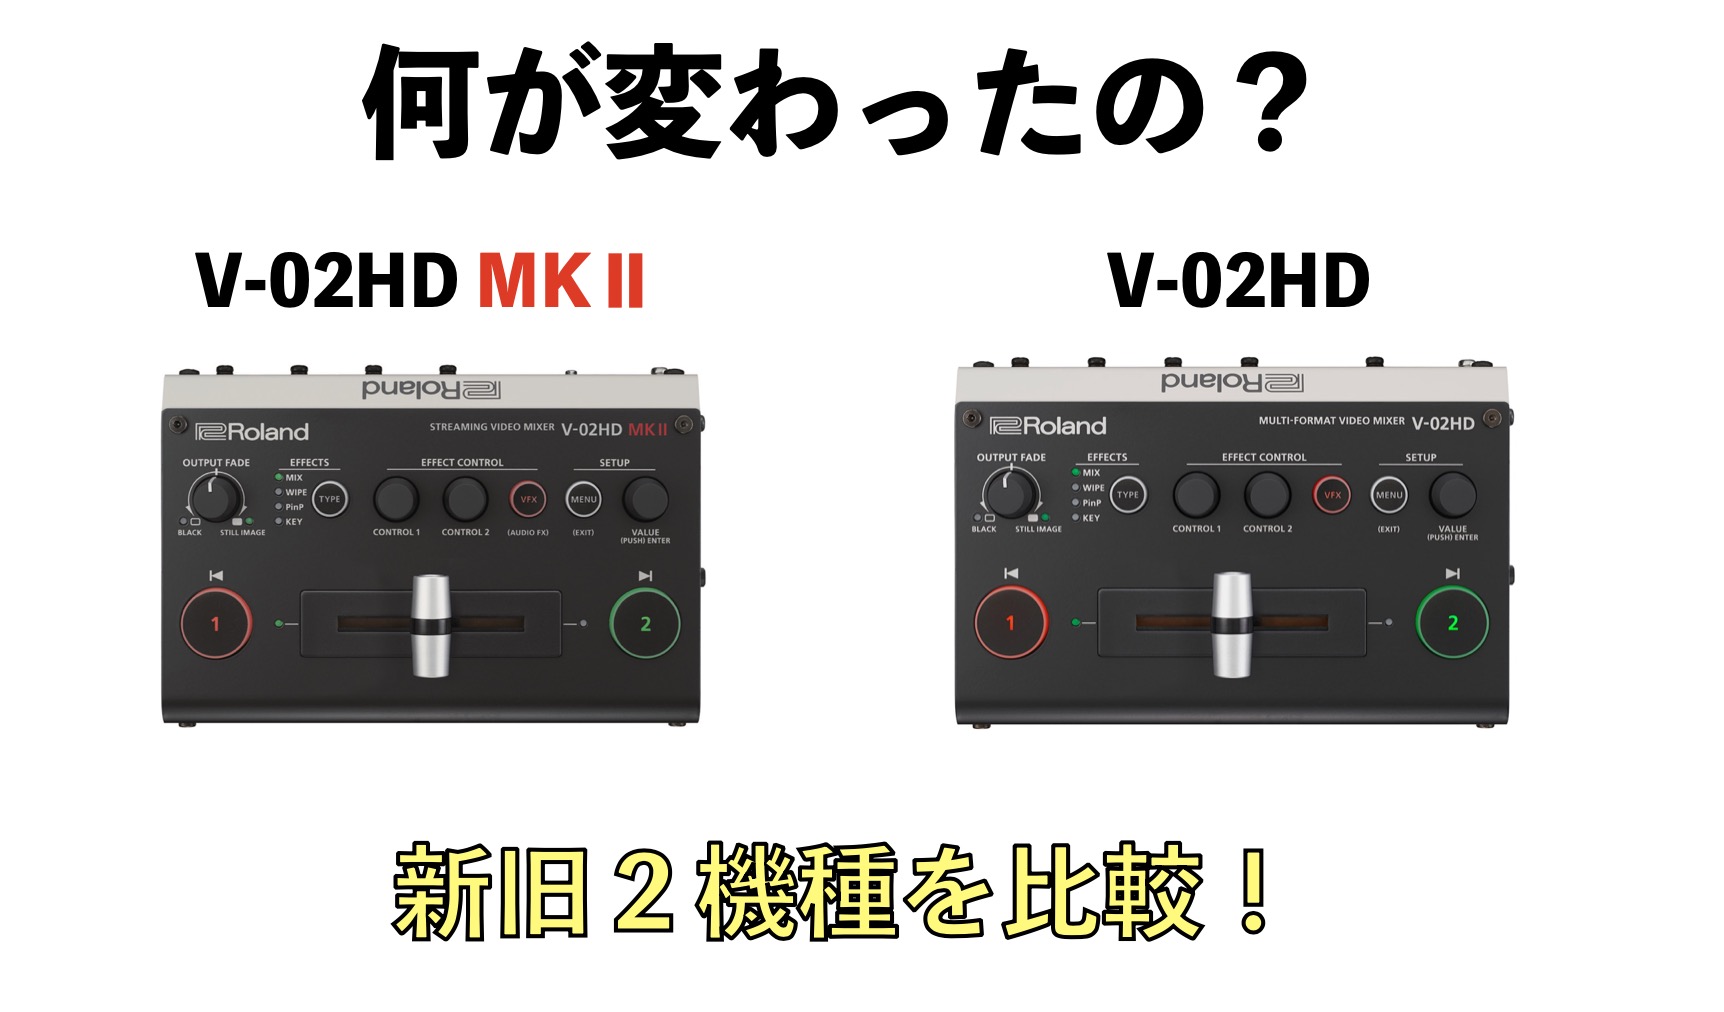 Roland v02HD ビデオスイッチャー